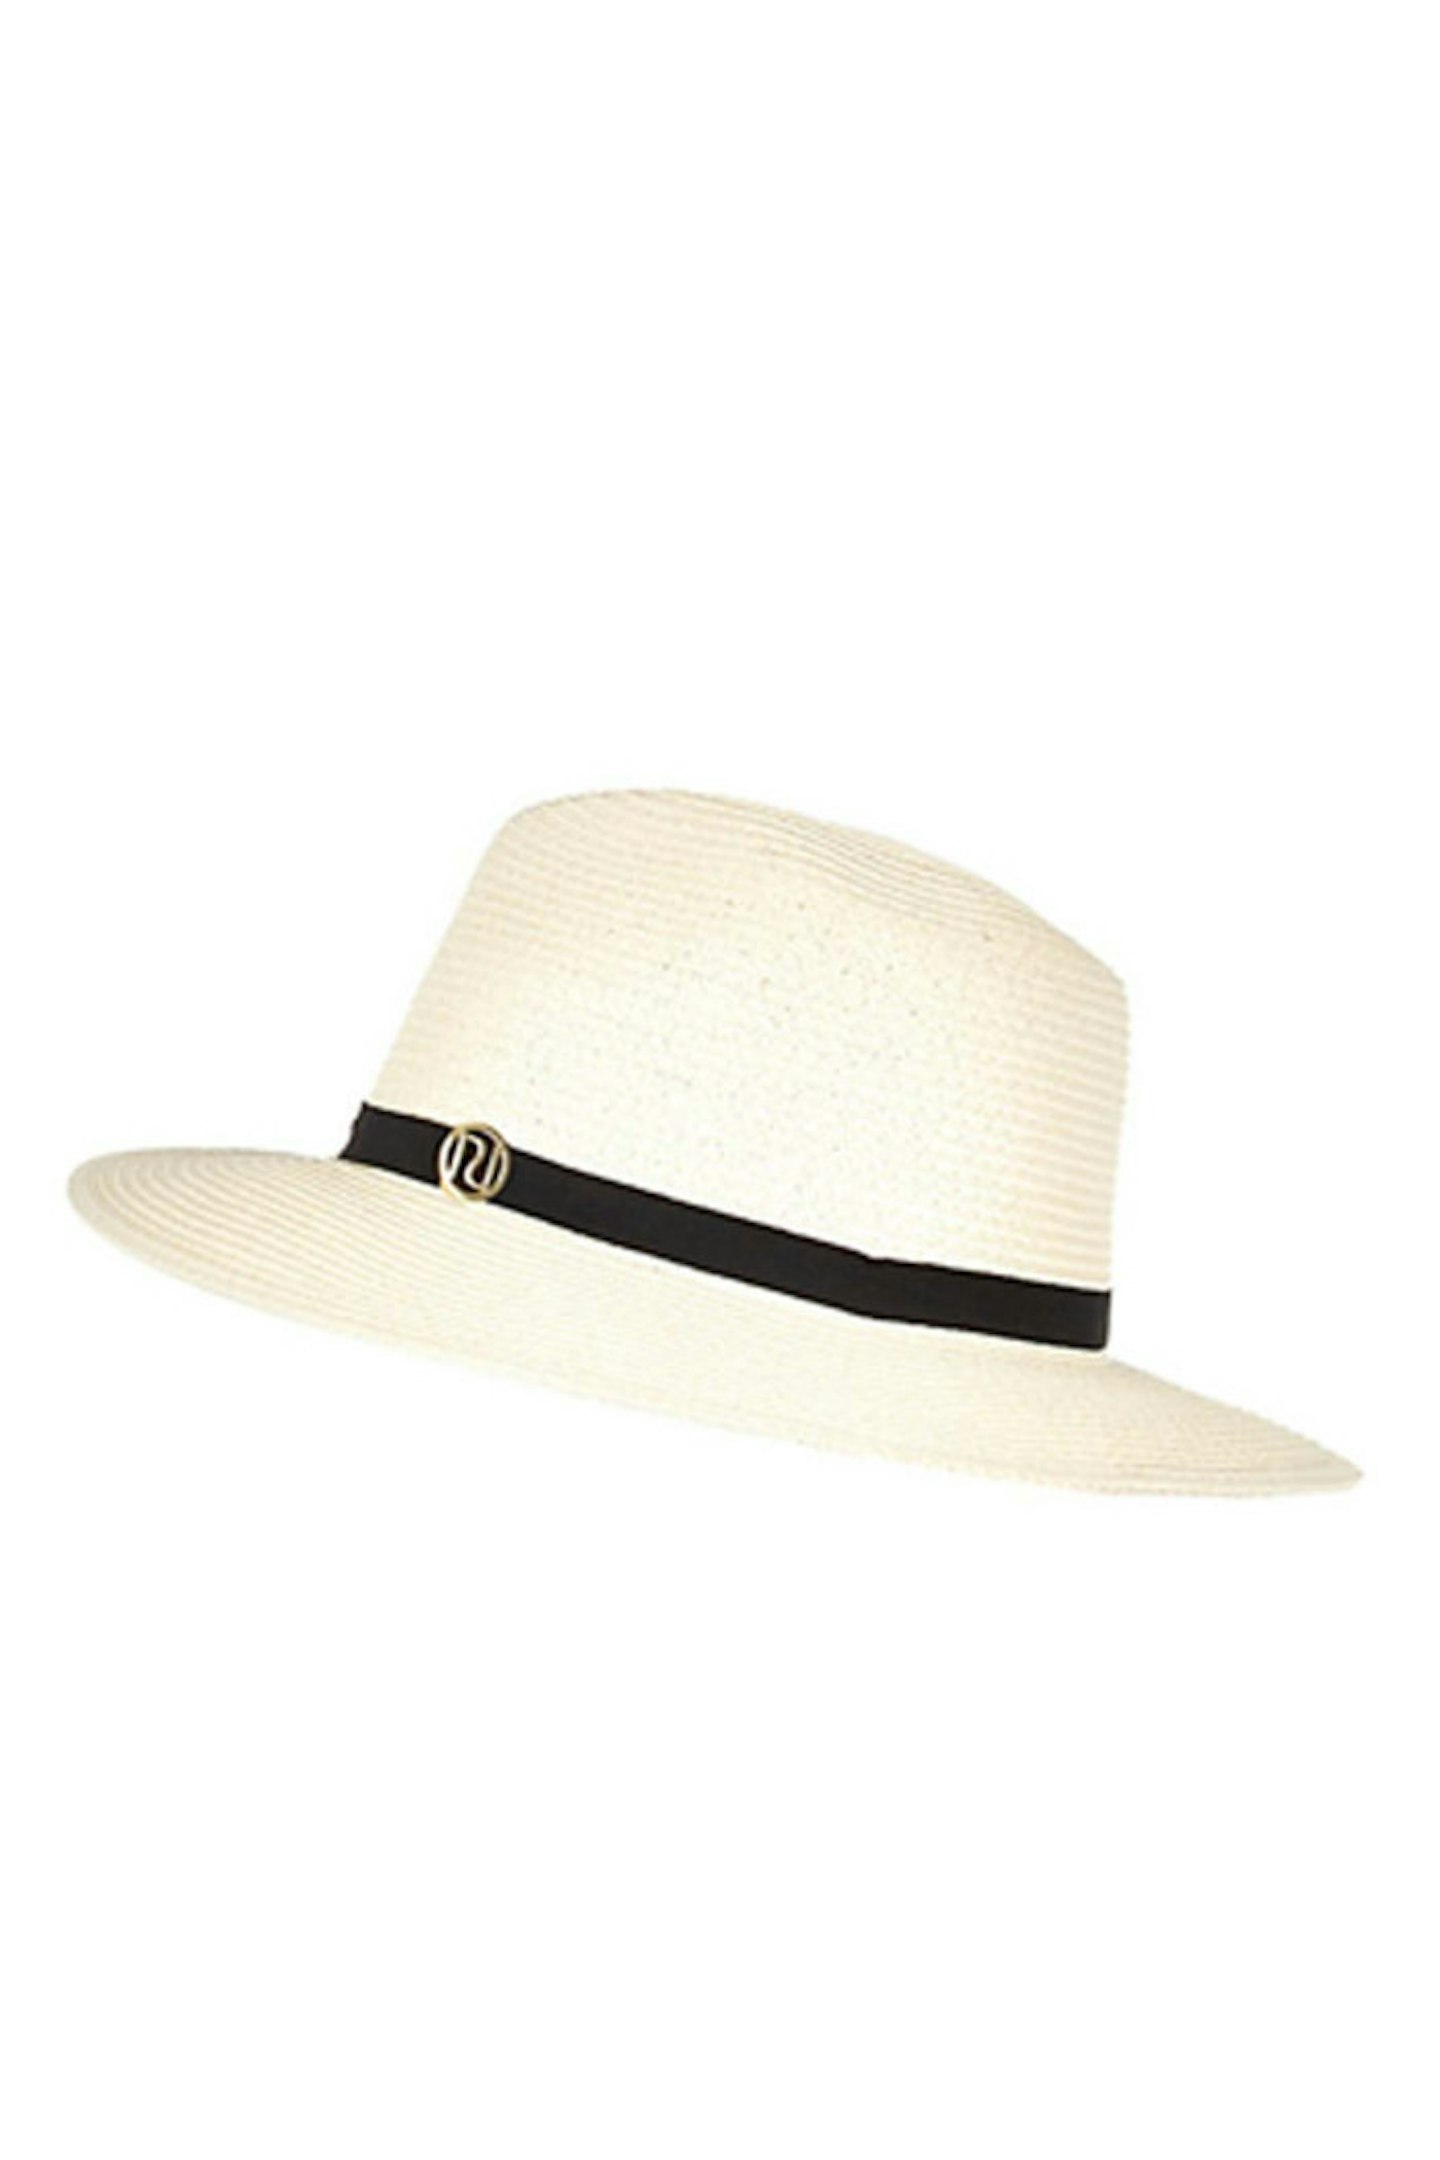 Panama hat, £18, River Island